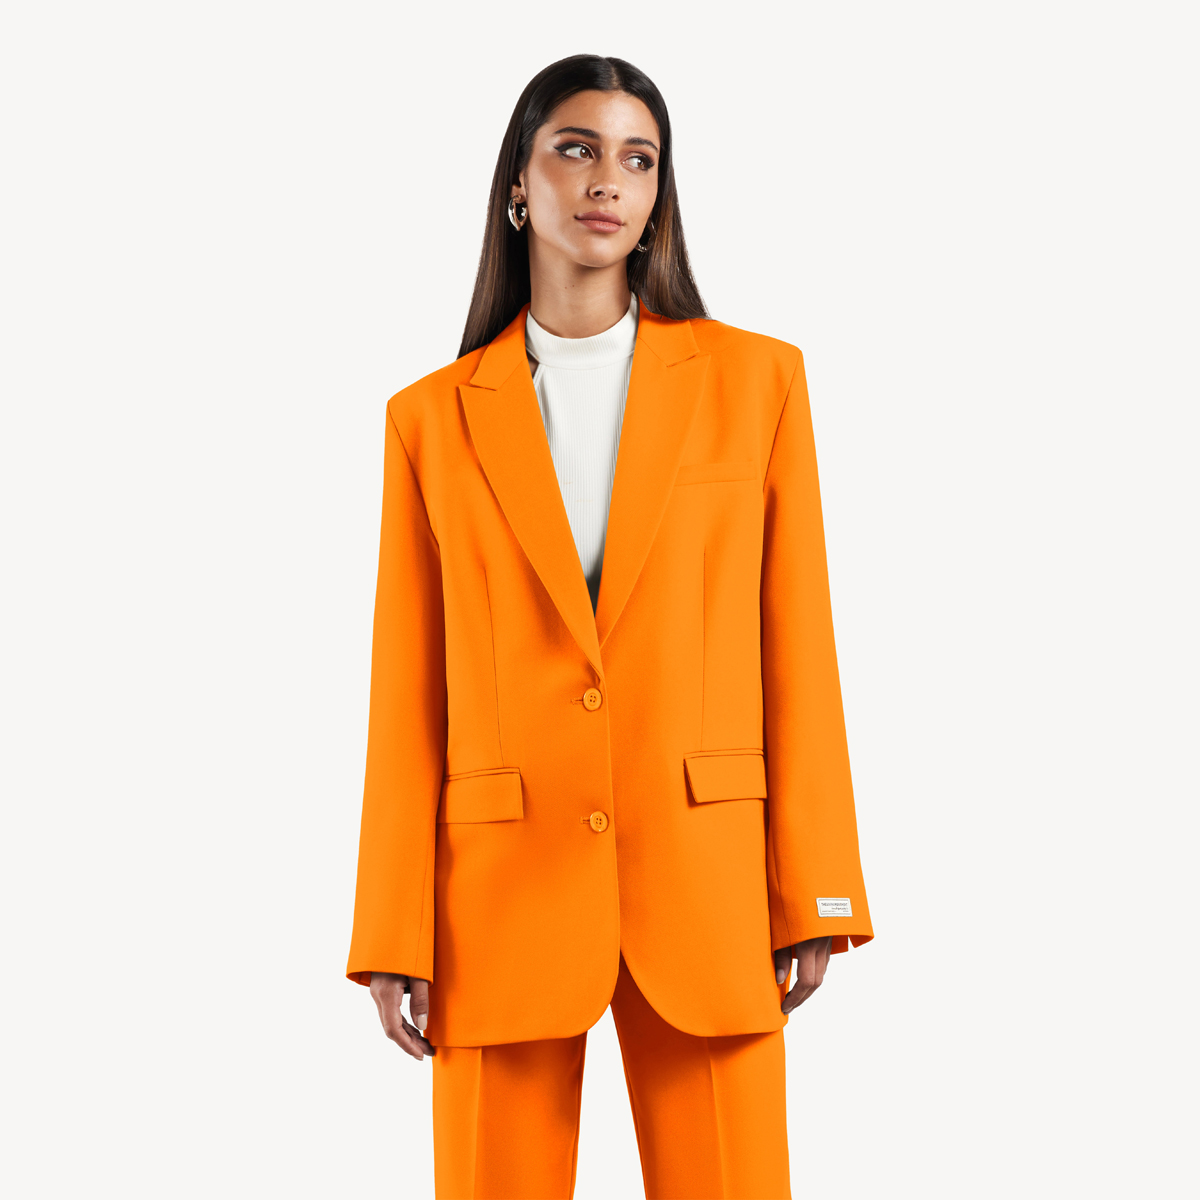 Buy Formal Oversized Blazer - Tangerine Online in Kuwait | Boutiqaat